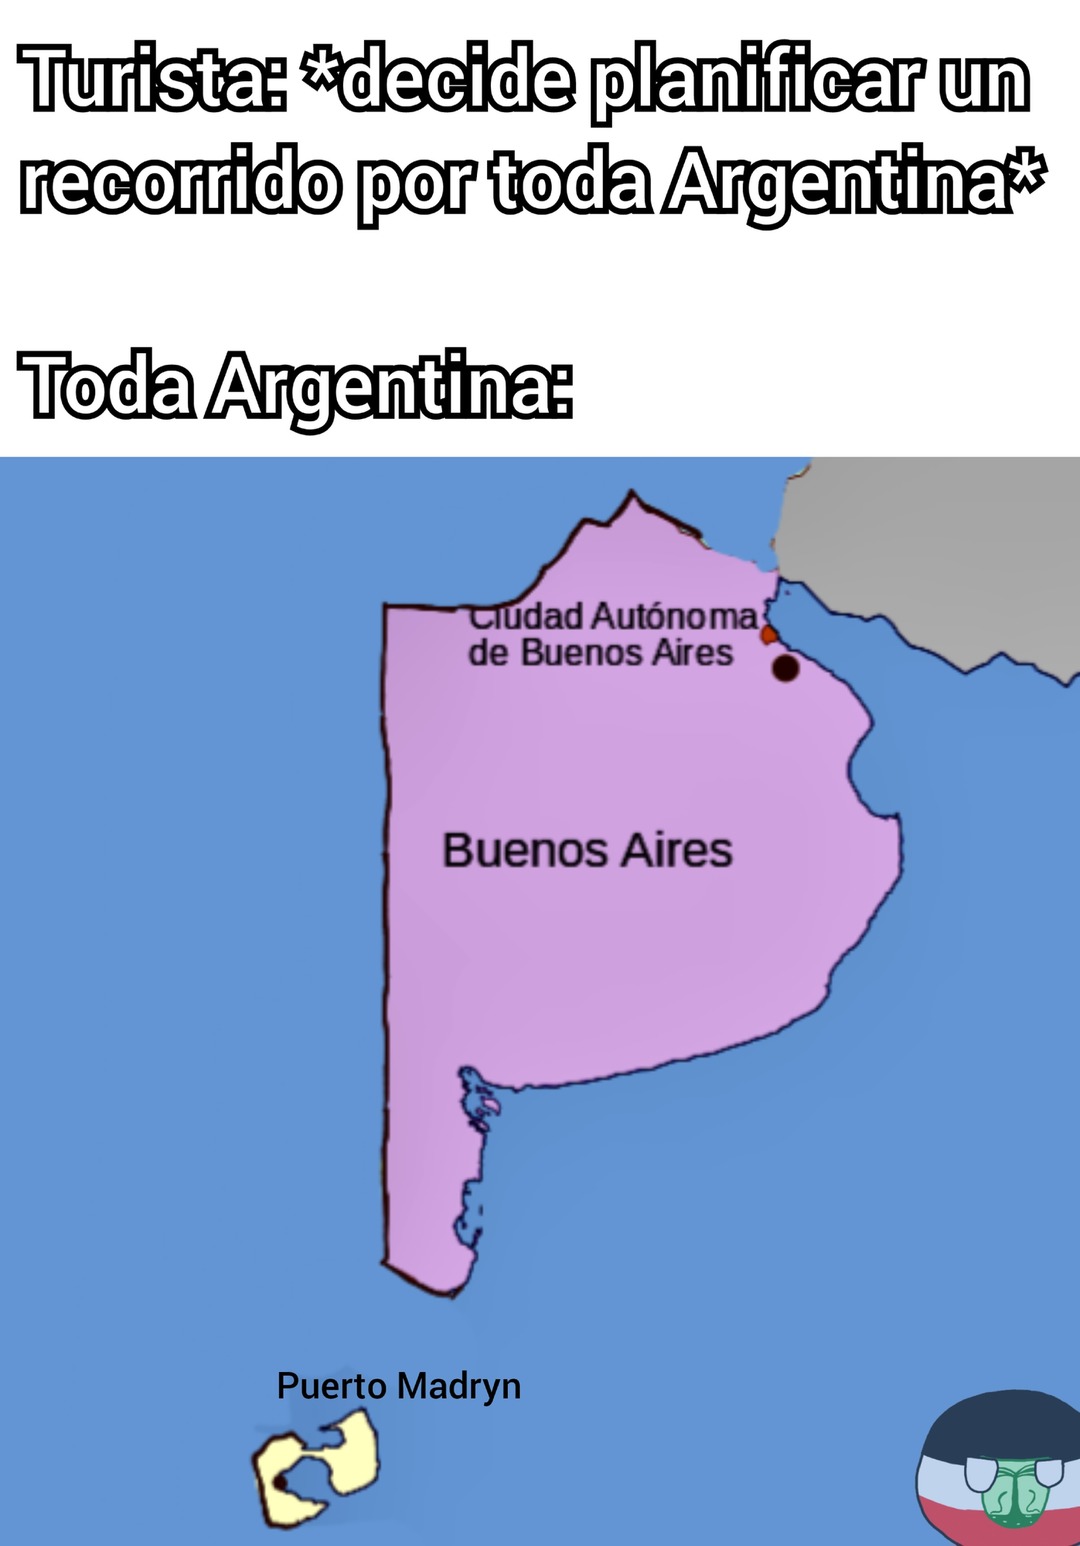 El recorrido en toda Argentina... - meme